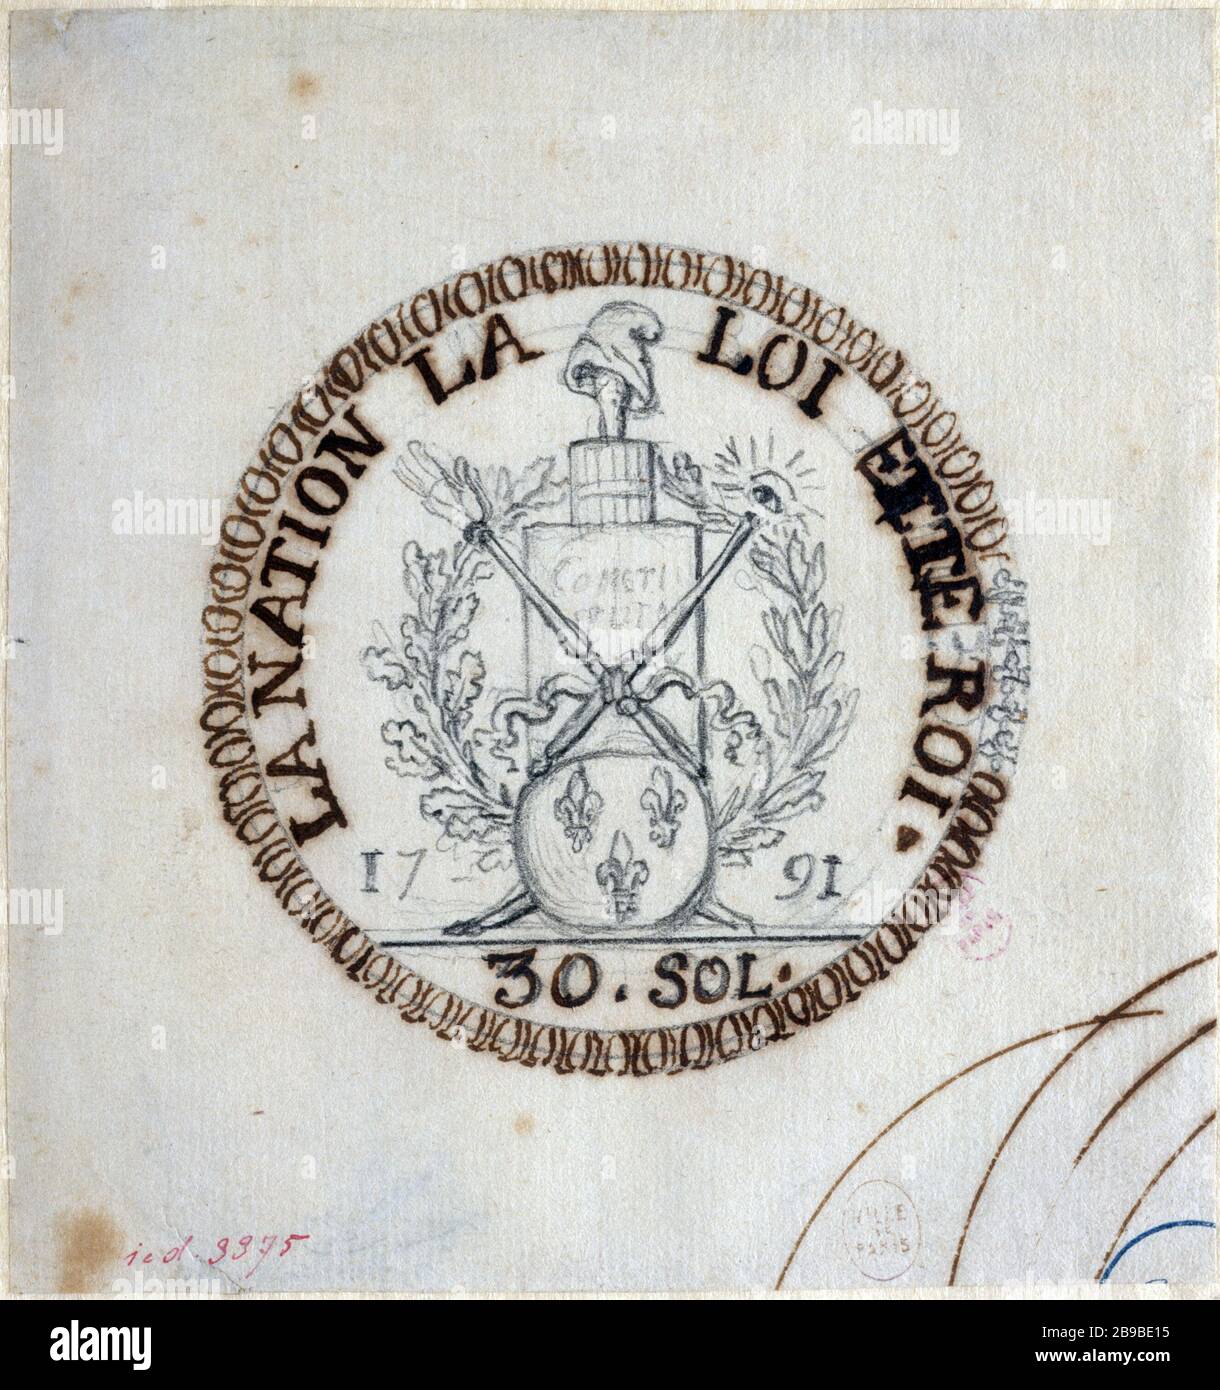 PIÈCE DE MONNAIE DU PROJET 30 ÉTAGES Augustin Dupre (1748-1833). 'Projet de monnaie de 30 sols de 1791'. Paris, musée Carnavalet. Banque D'Images